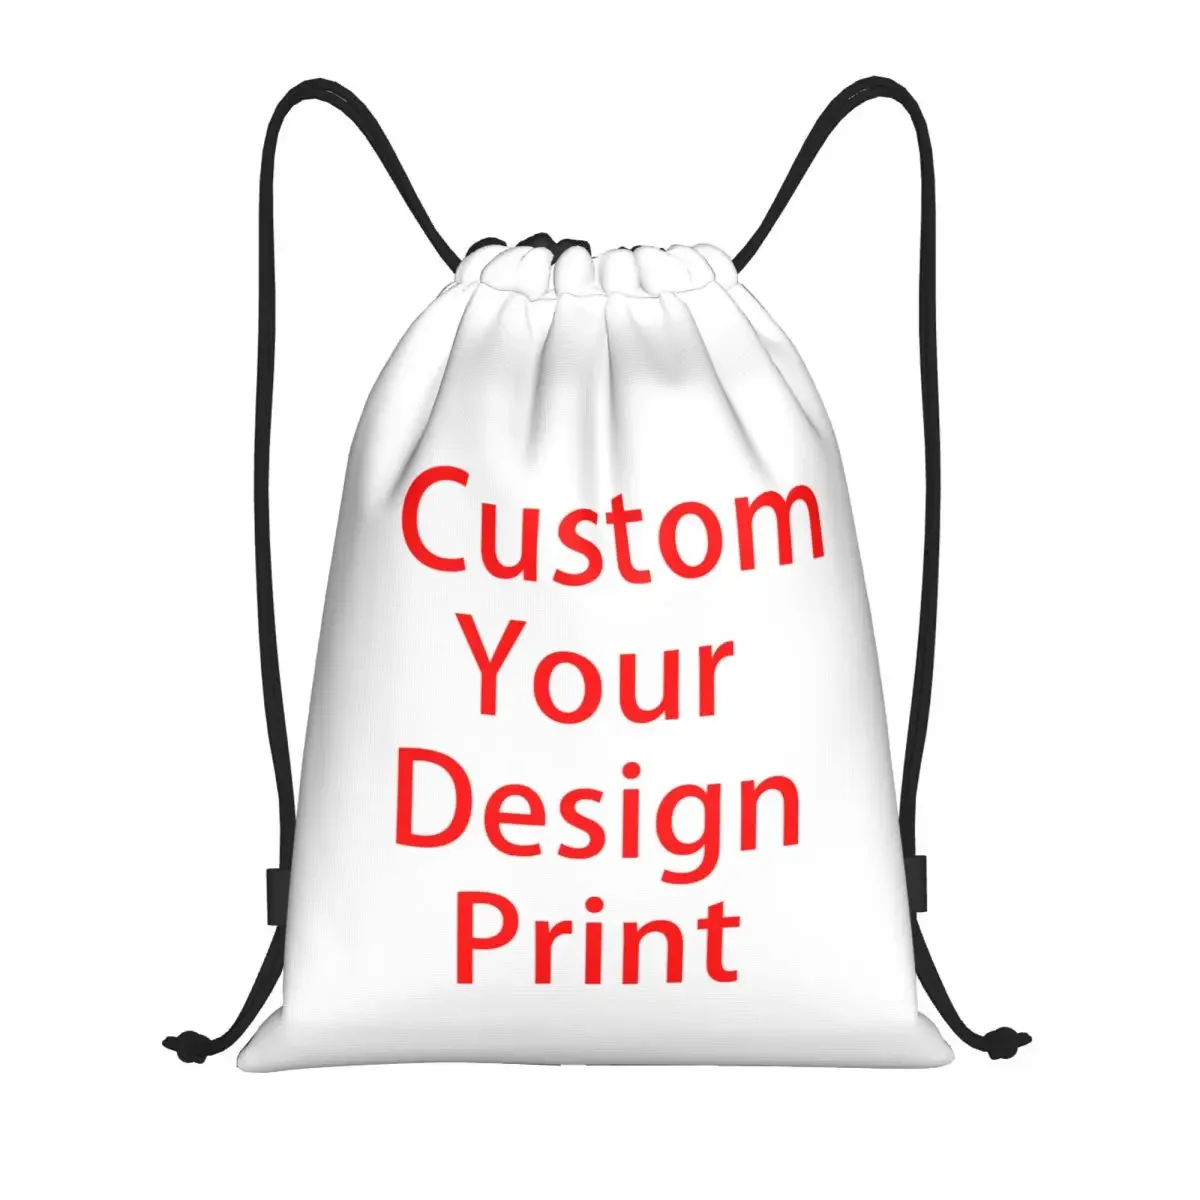 

Индивидуальный индивидуальный дизайн, Женский легкий индивидуальный логотип, напечатанный спортивный рюкзак для занятий йогой